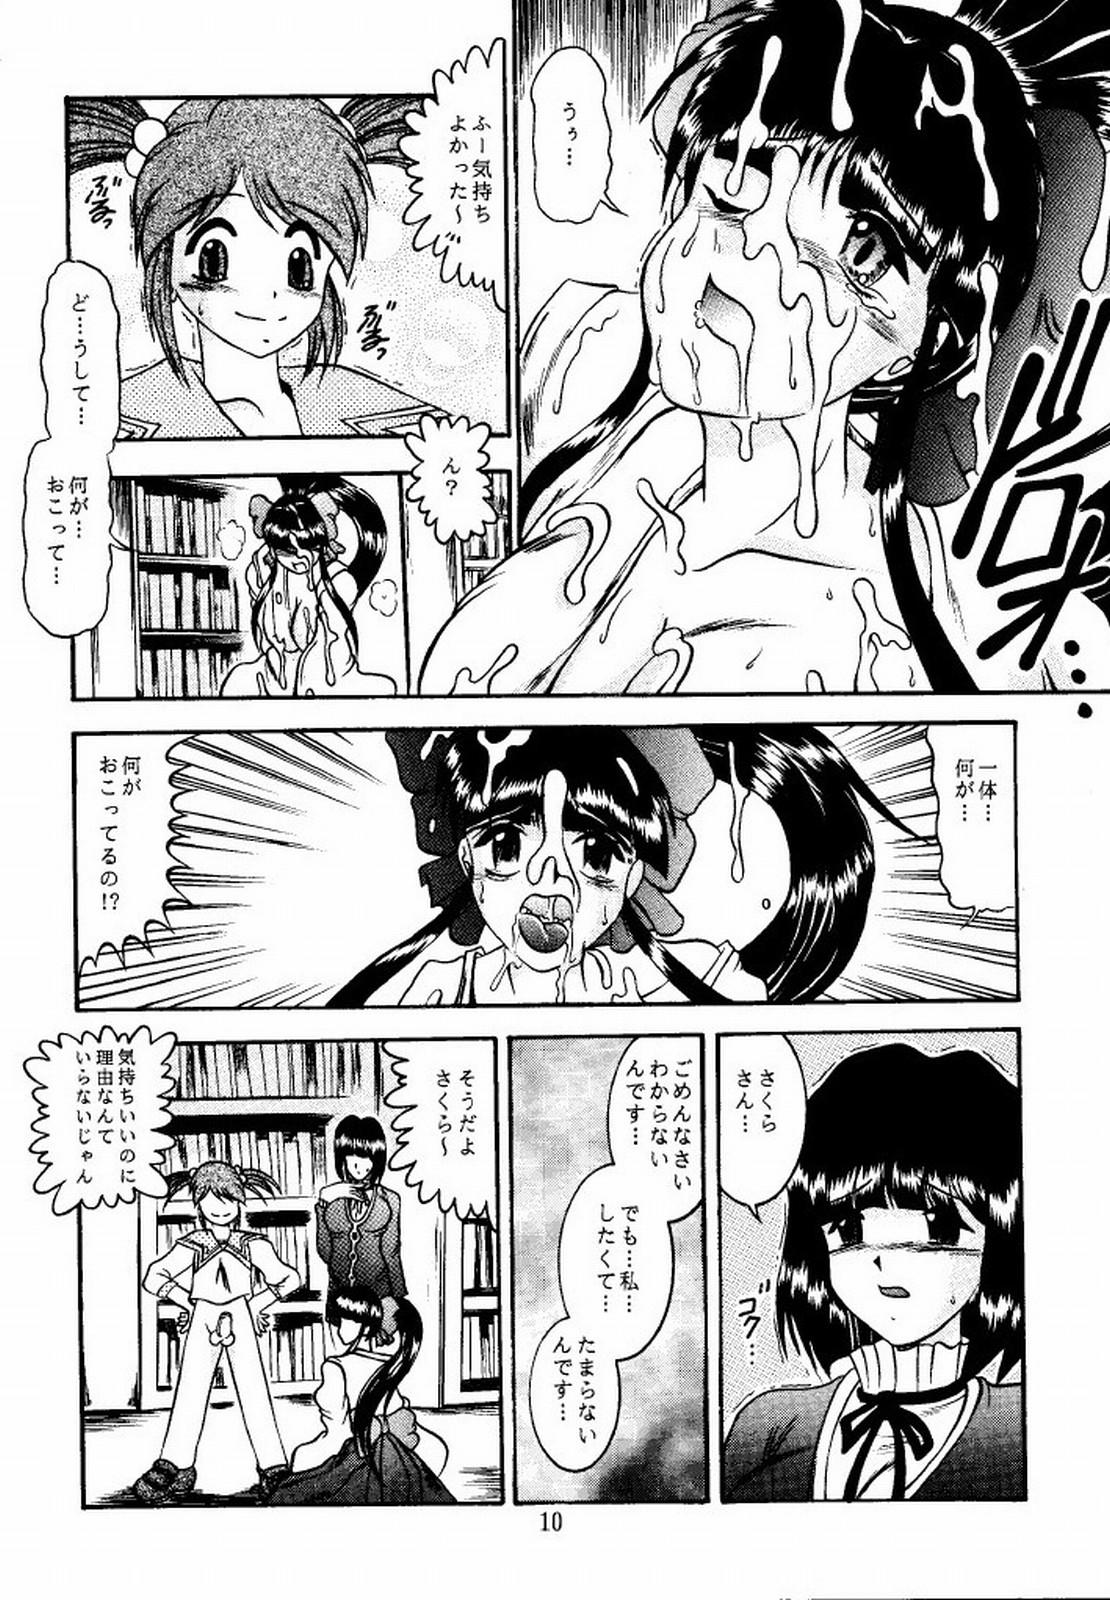 Cheerleader Eternal DROWSINESS - Sakura taisen Outdoors - Page 10